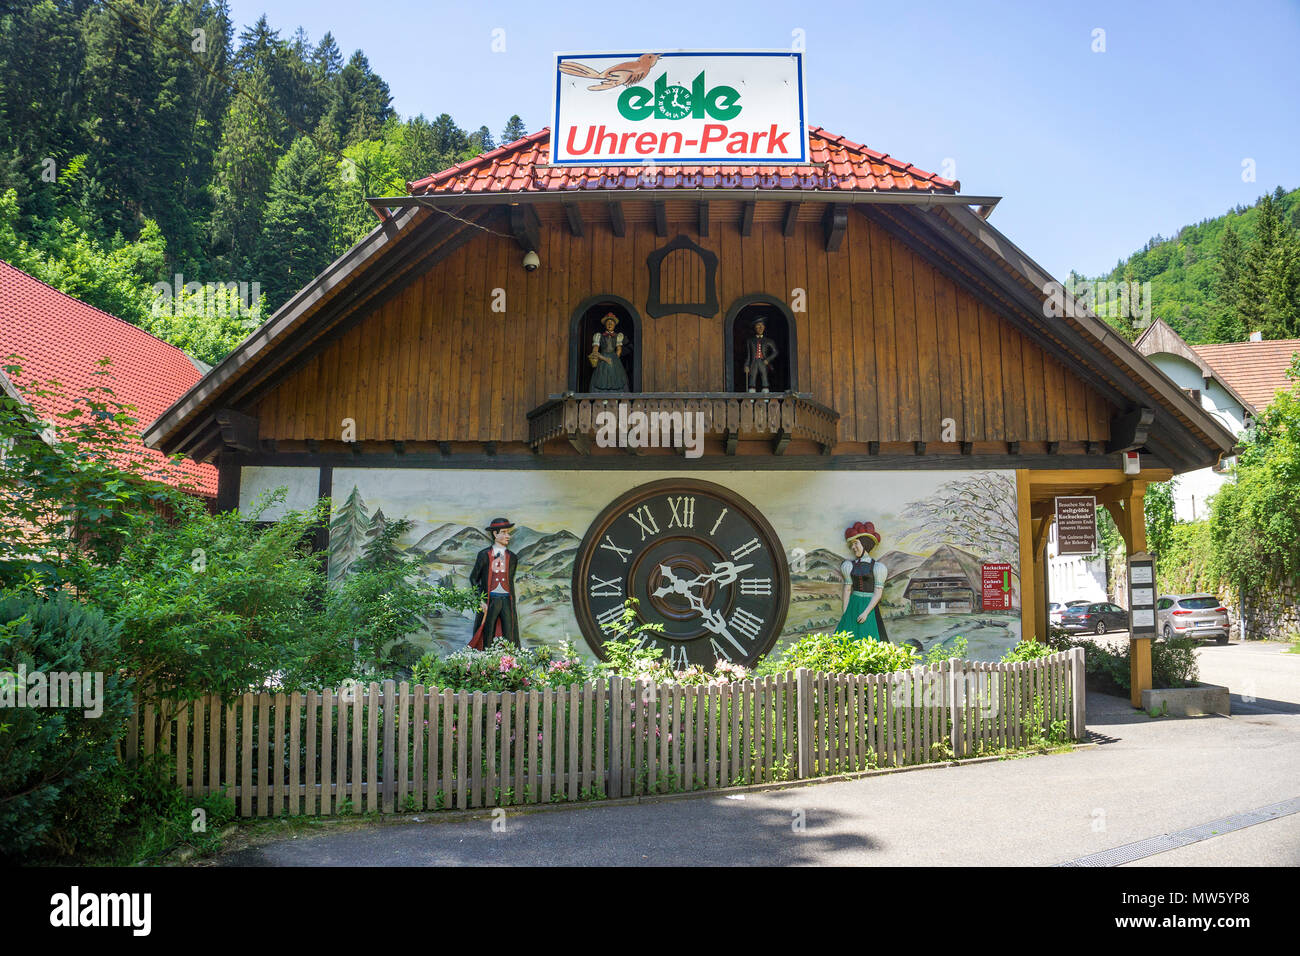 Le plus grand du monde coucou à Eble réveil park, village de Triberg, Forêt-Noire, Bade-Wurtemberg, Allemagne, Europe Banque D'Images